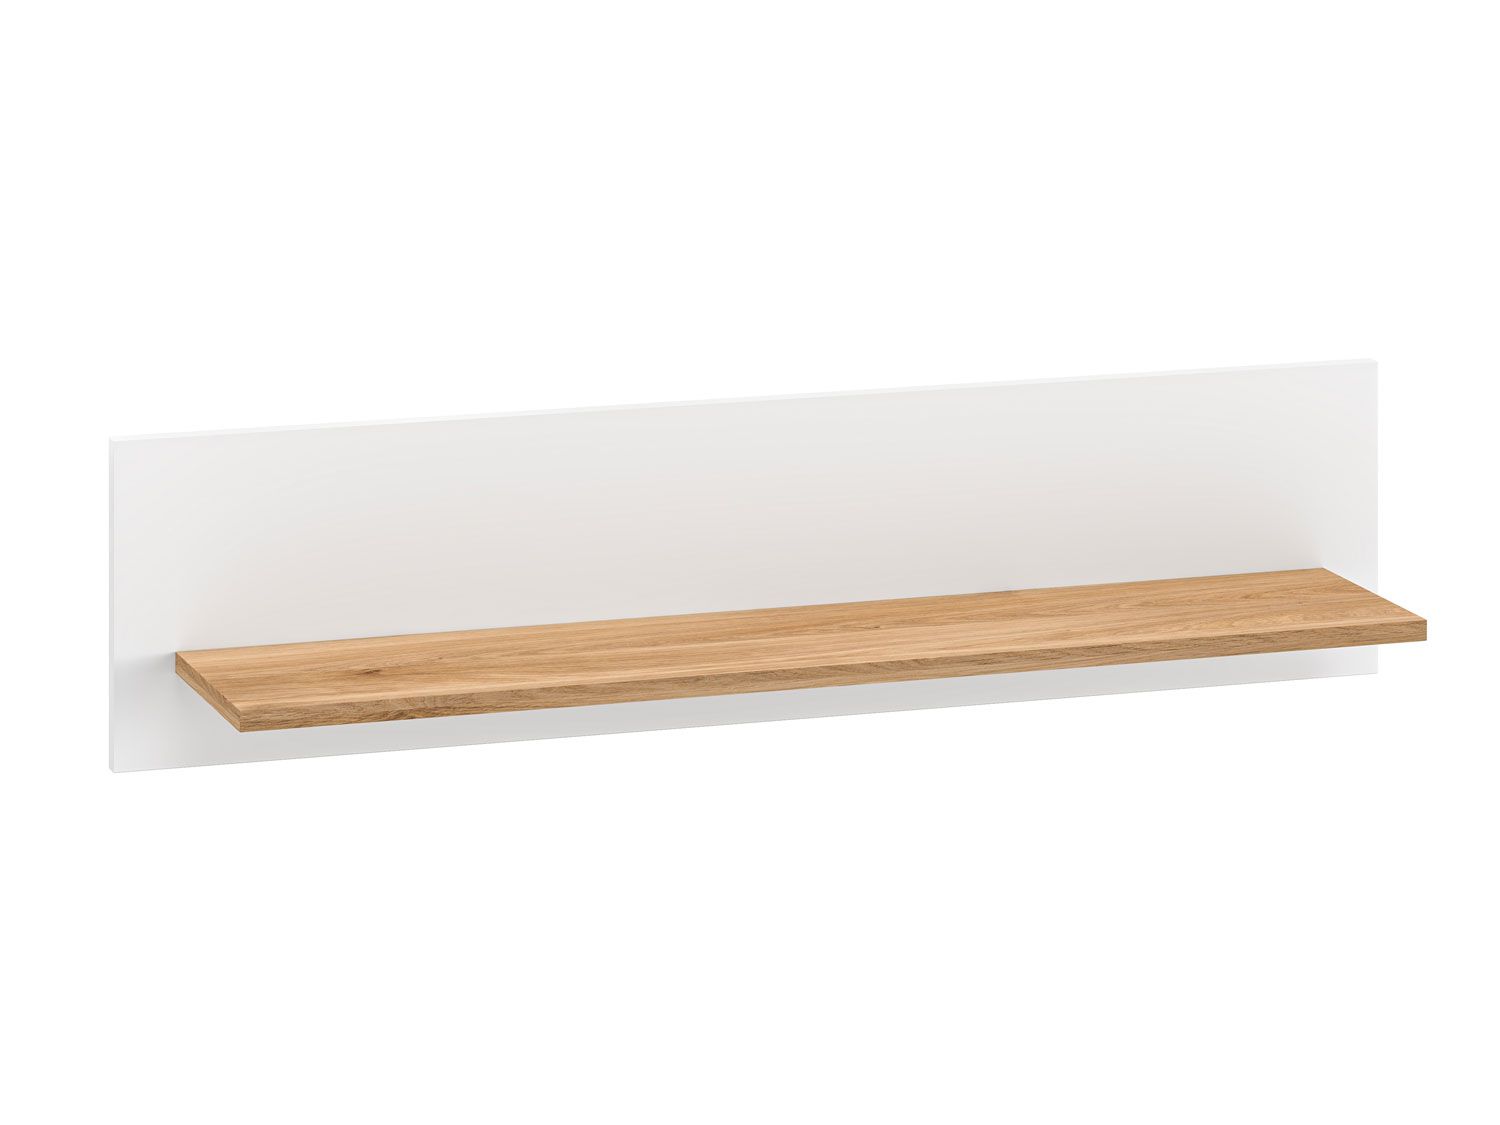 Étagère suspendue / Tablette murale avec une étagère Mackinac 10, Couleur : Blanc / Chêne, dimensions : 25 x 101 x 21 cm, facile à combiner avec d'autres meubles